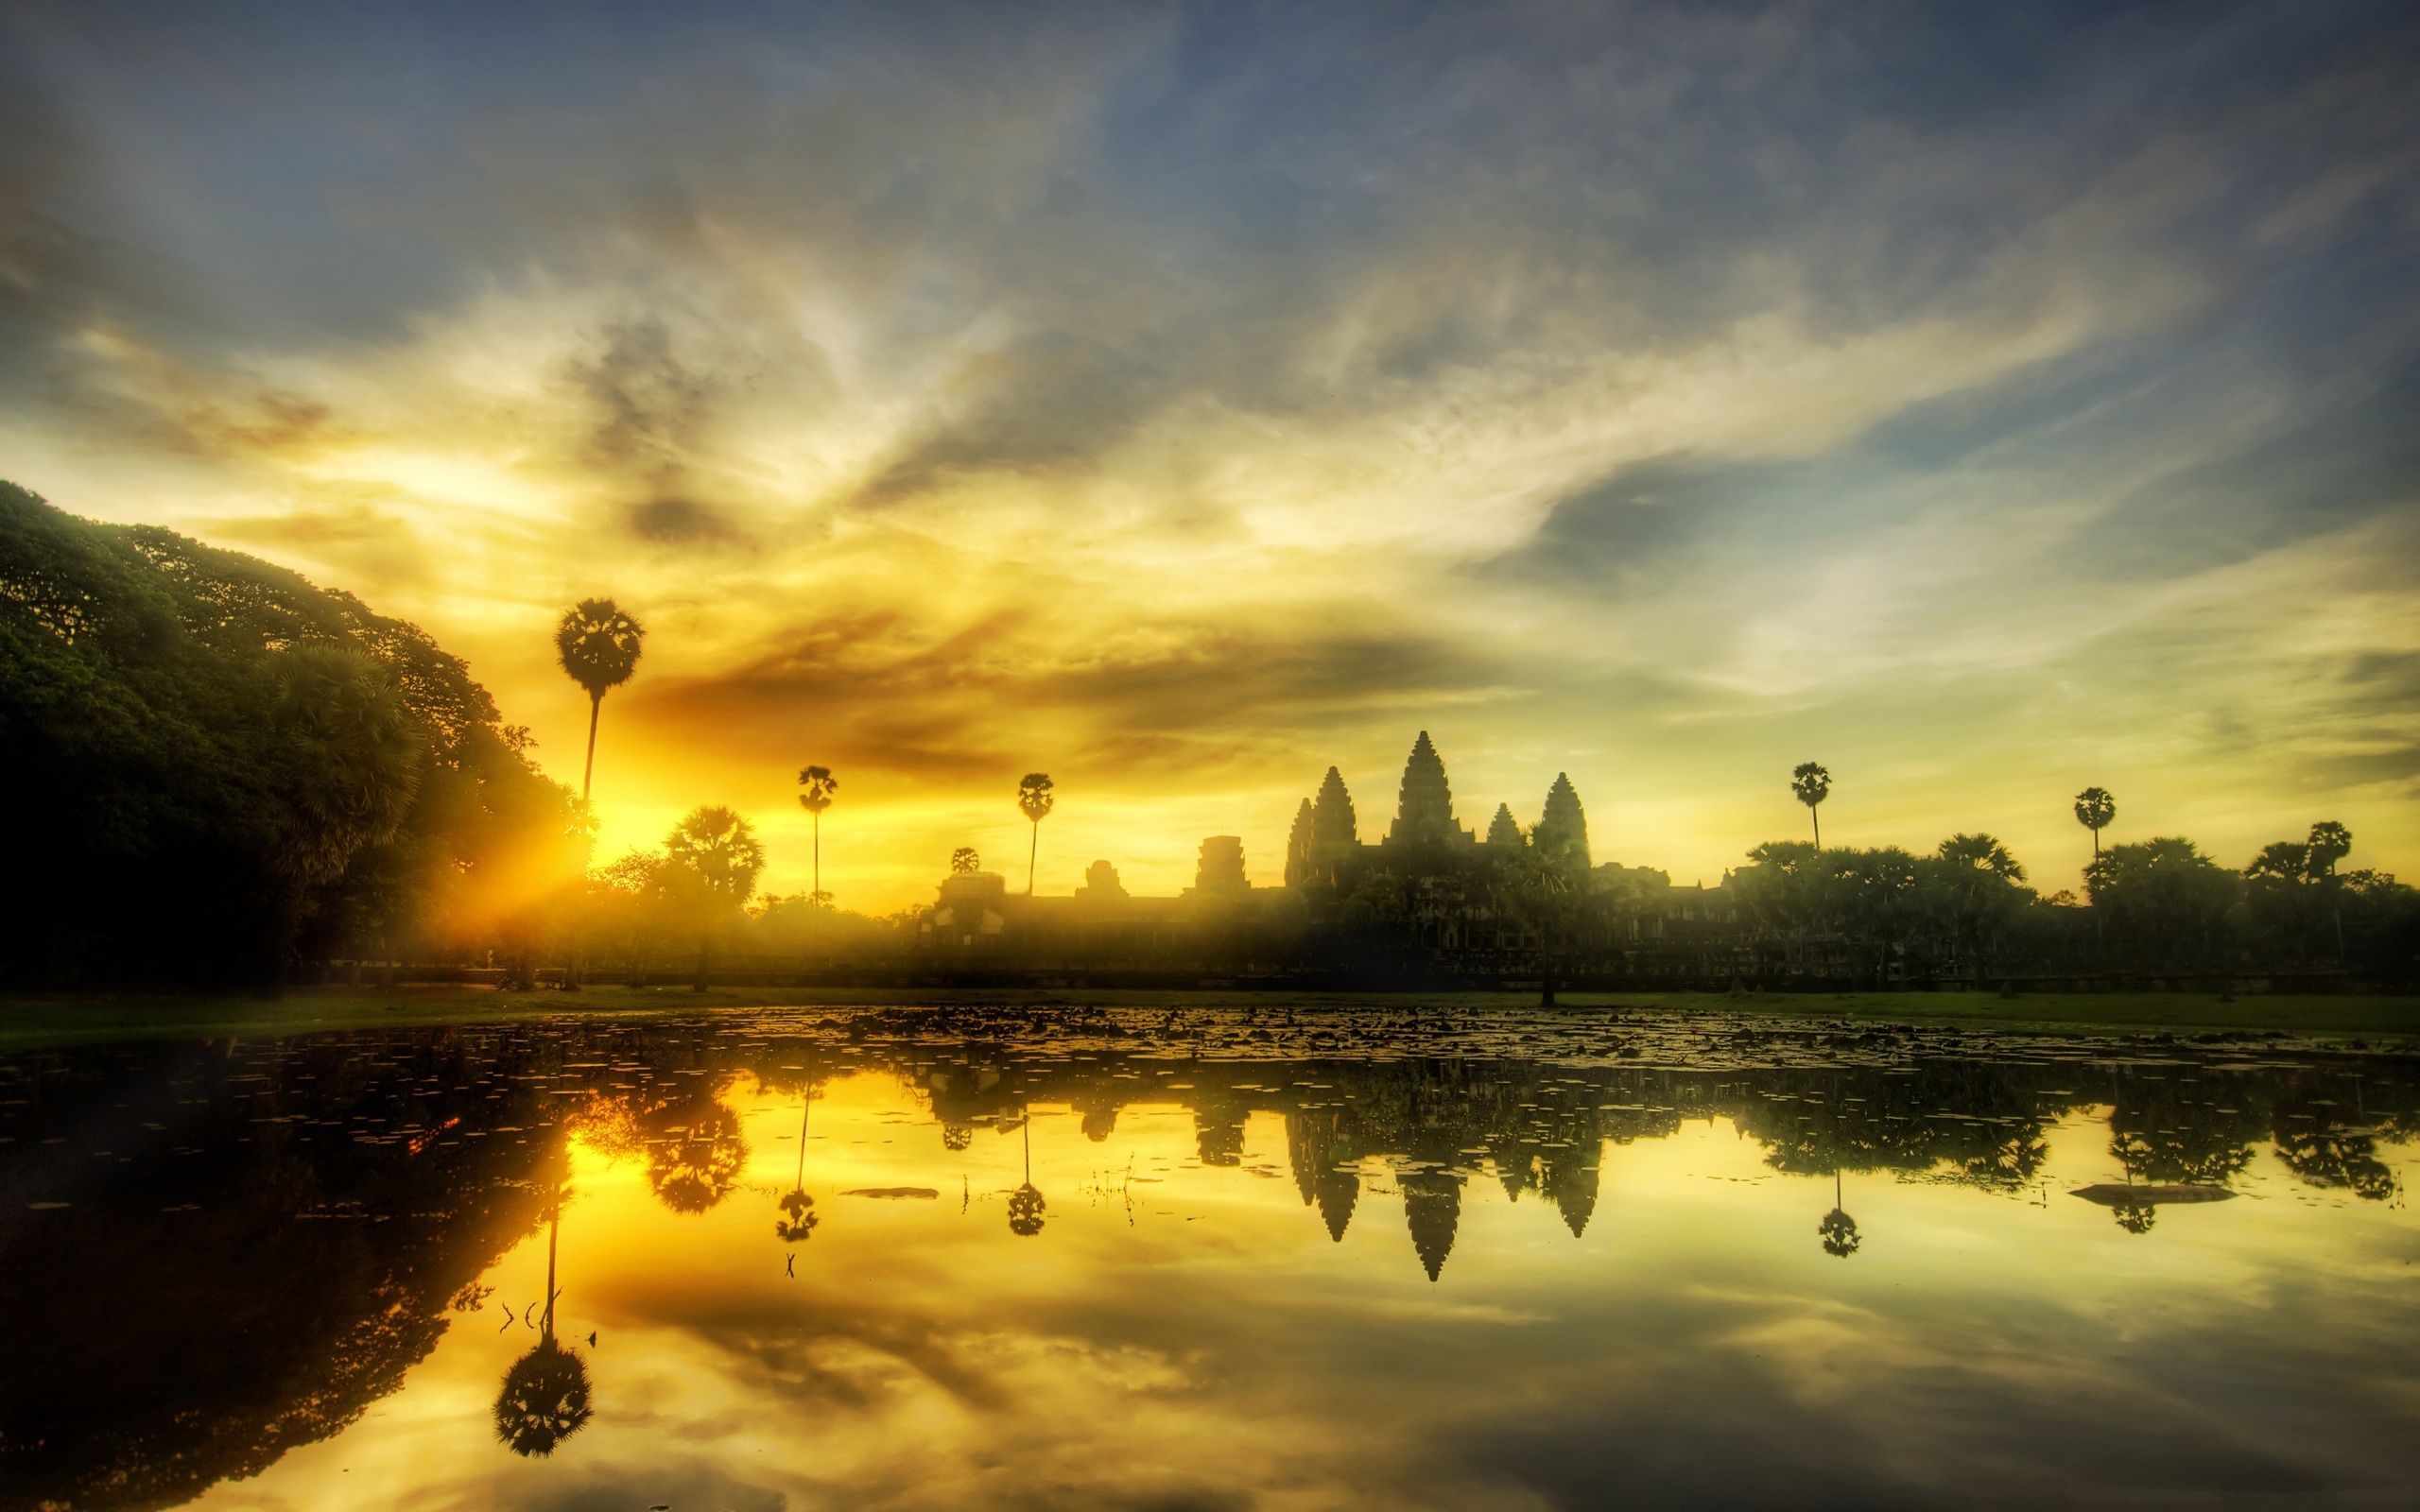 Angkor Wat HD Wallpaper